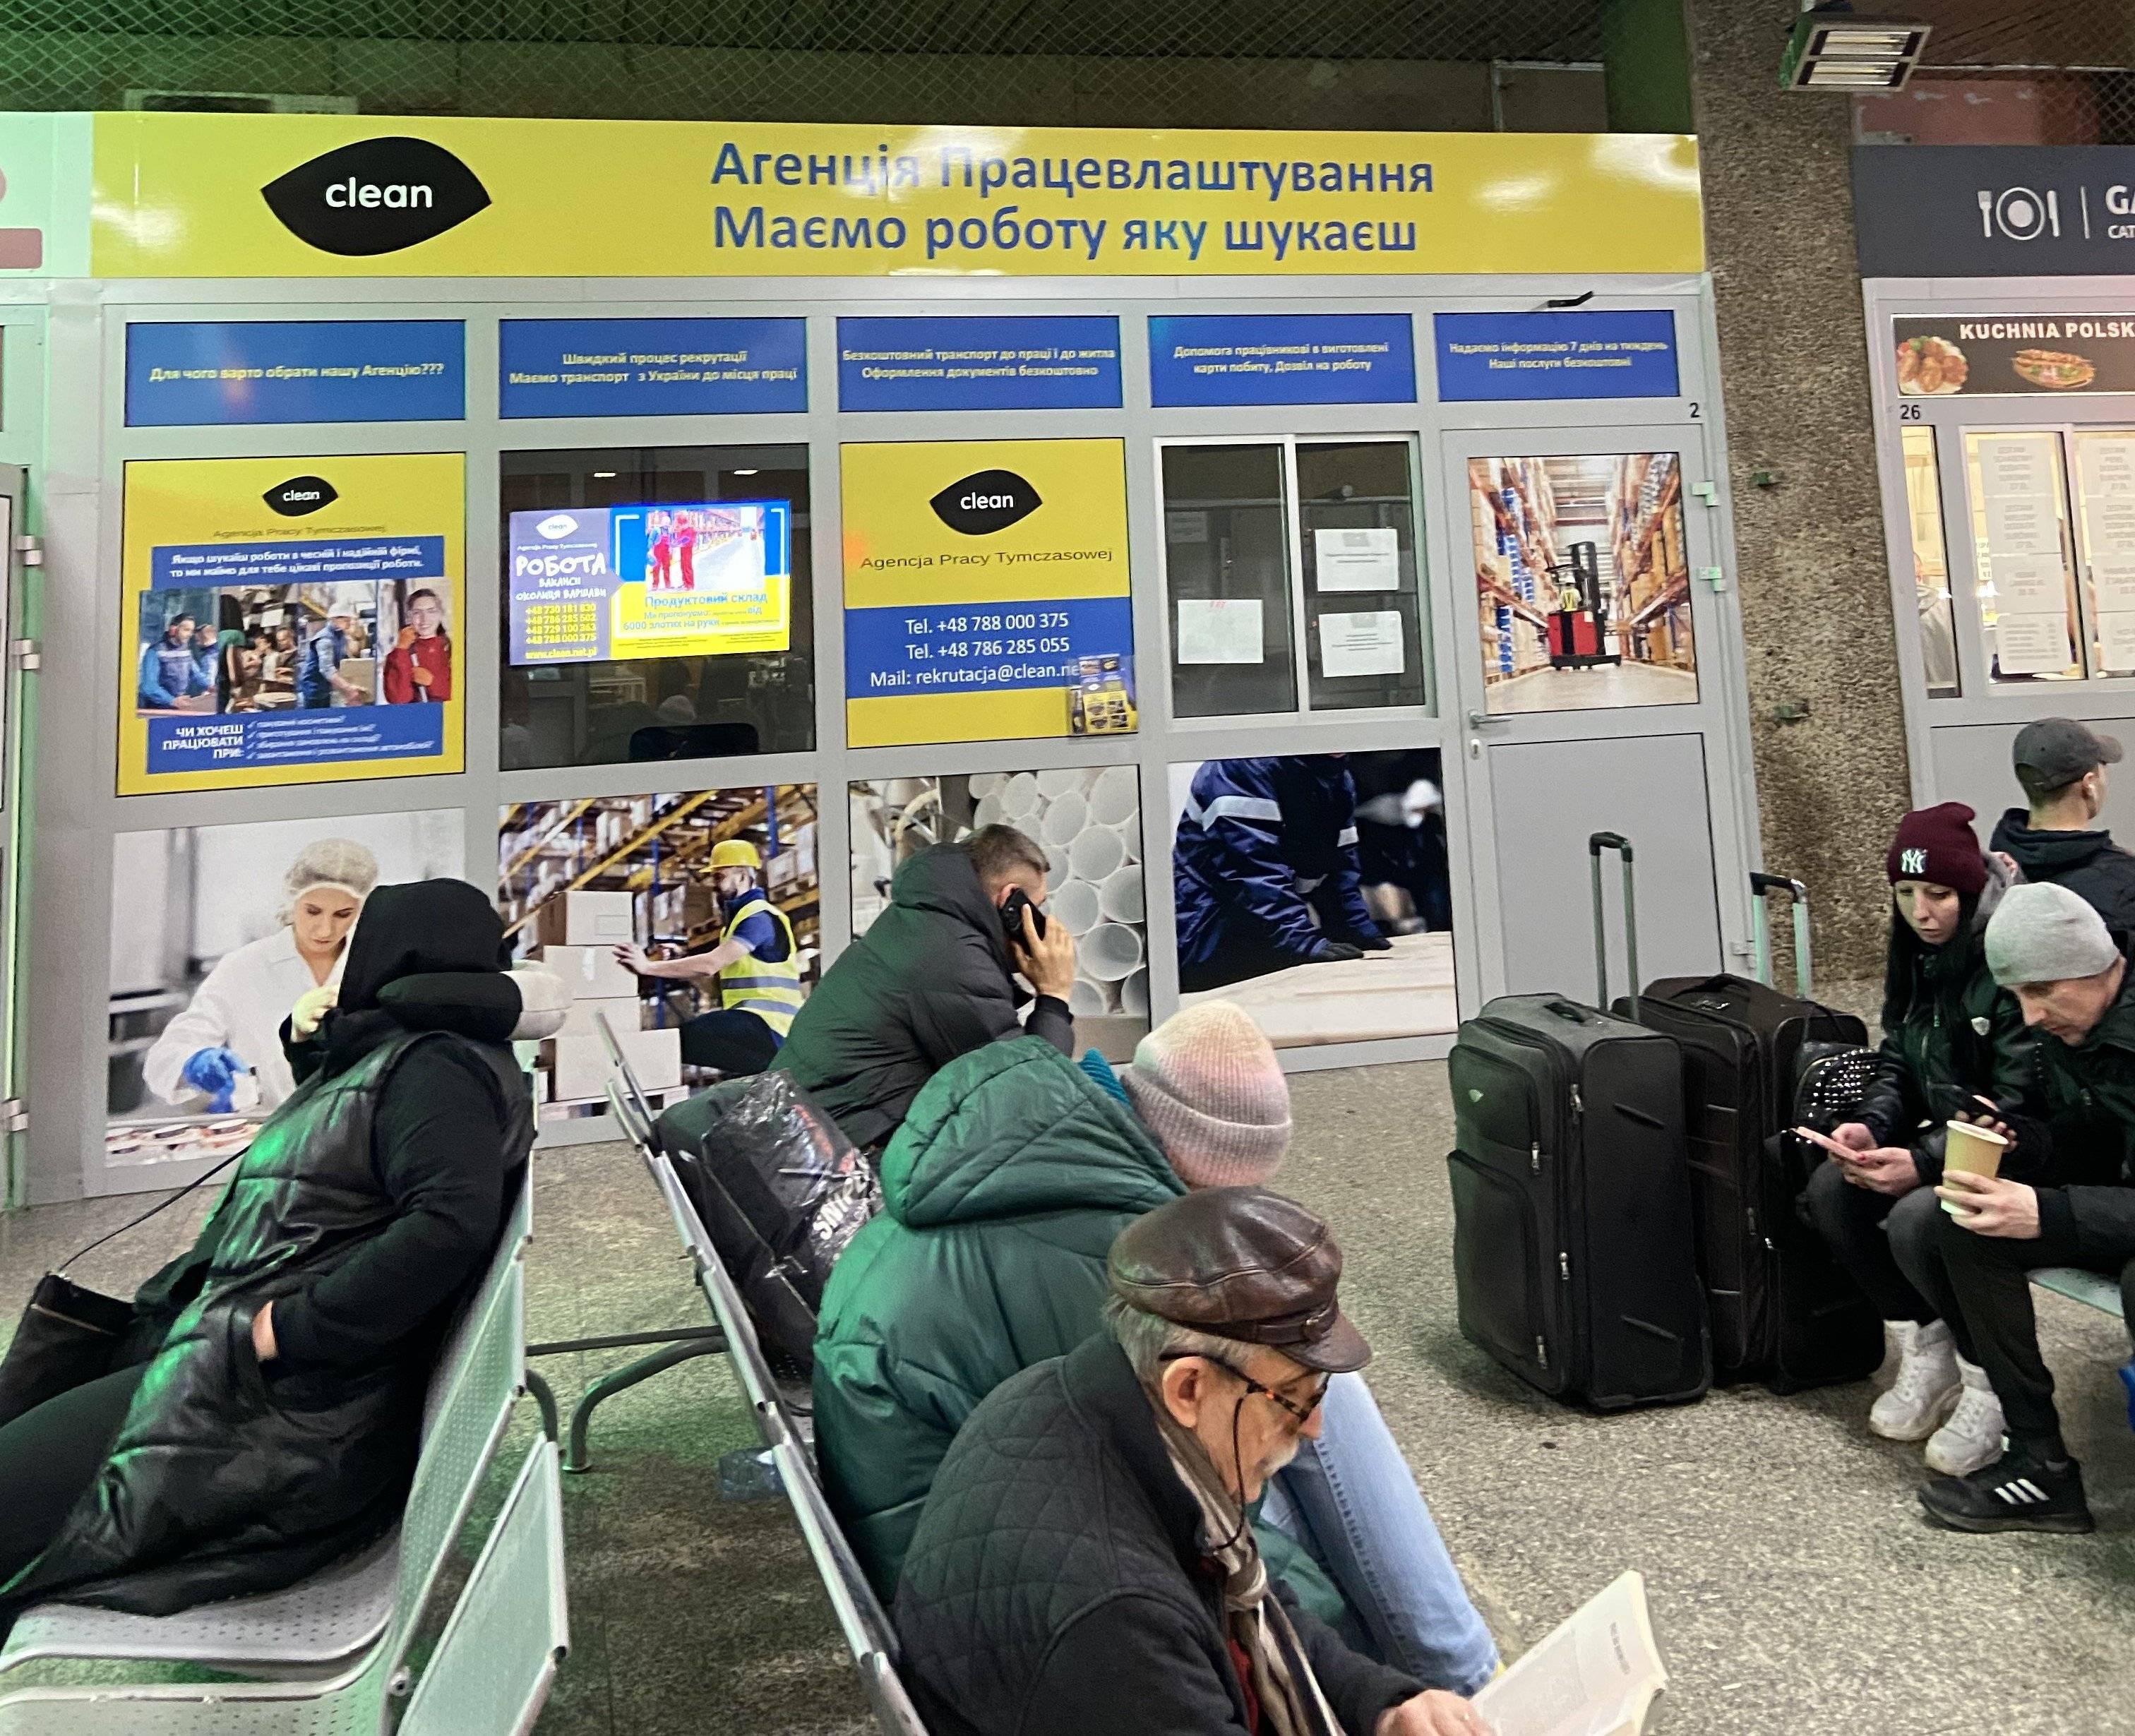 Dworzec autobusowy, ogłoszenia agencji pracy w języku ukraińskim